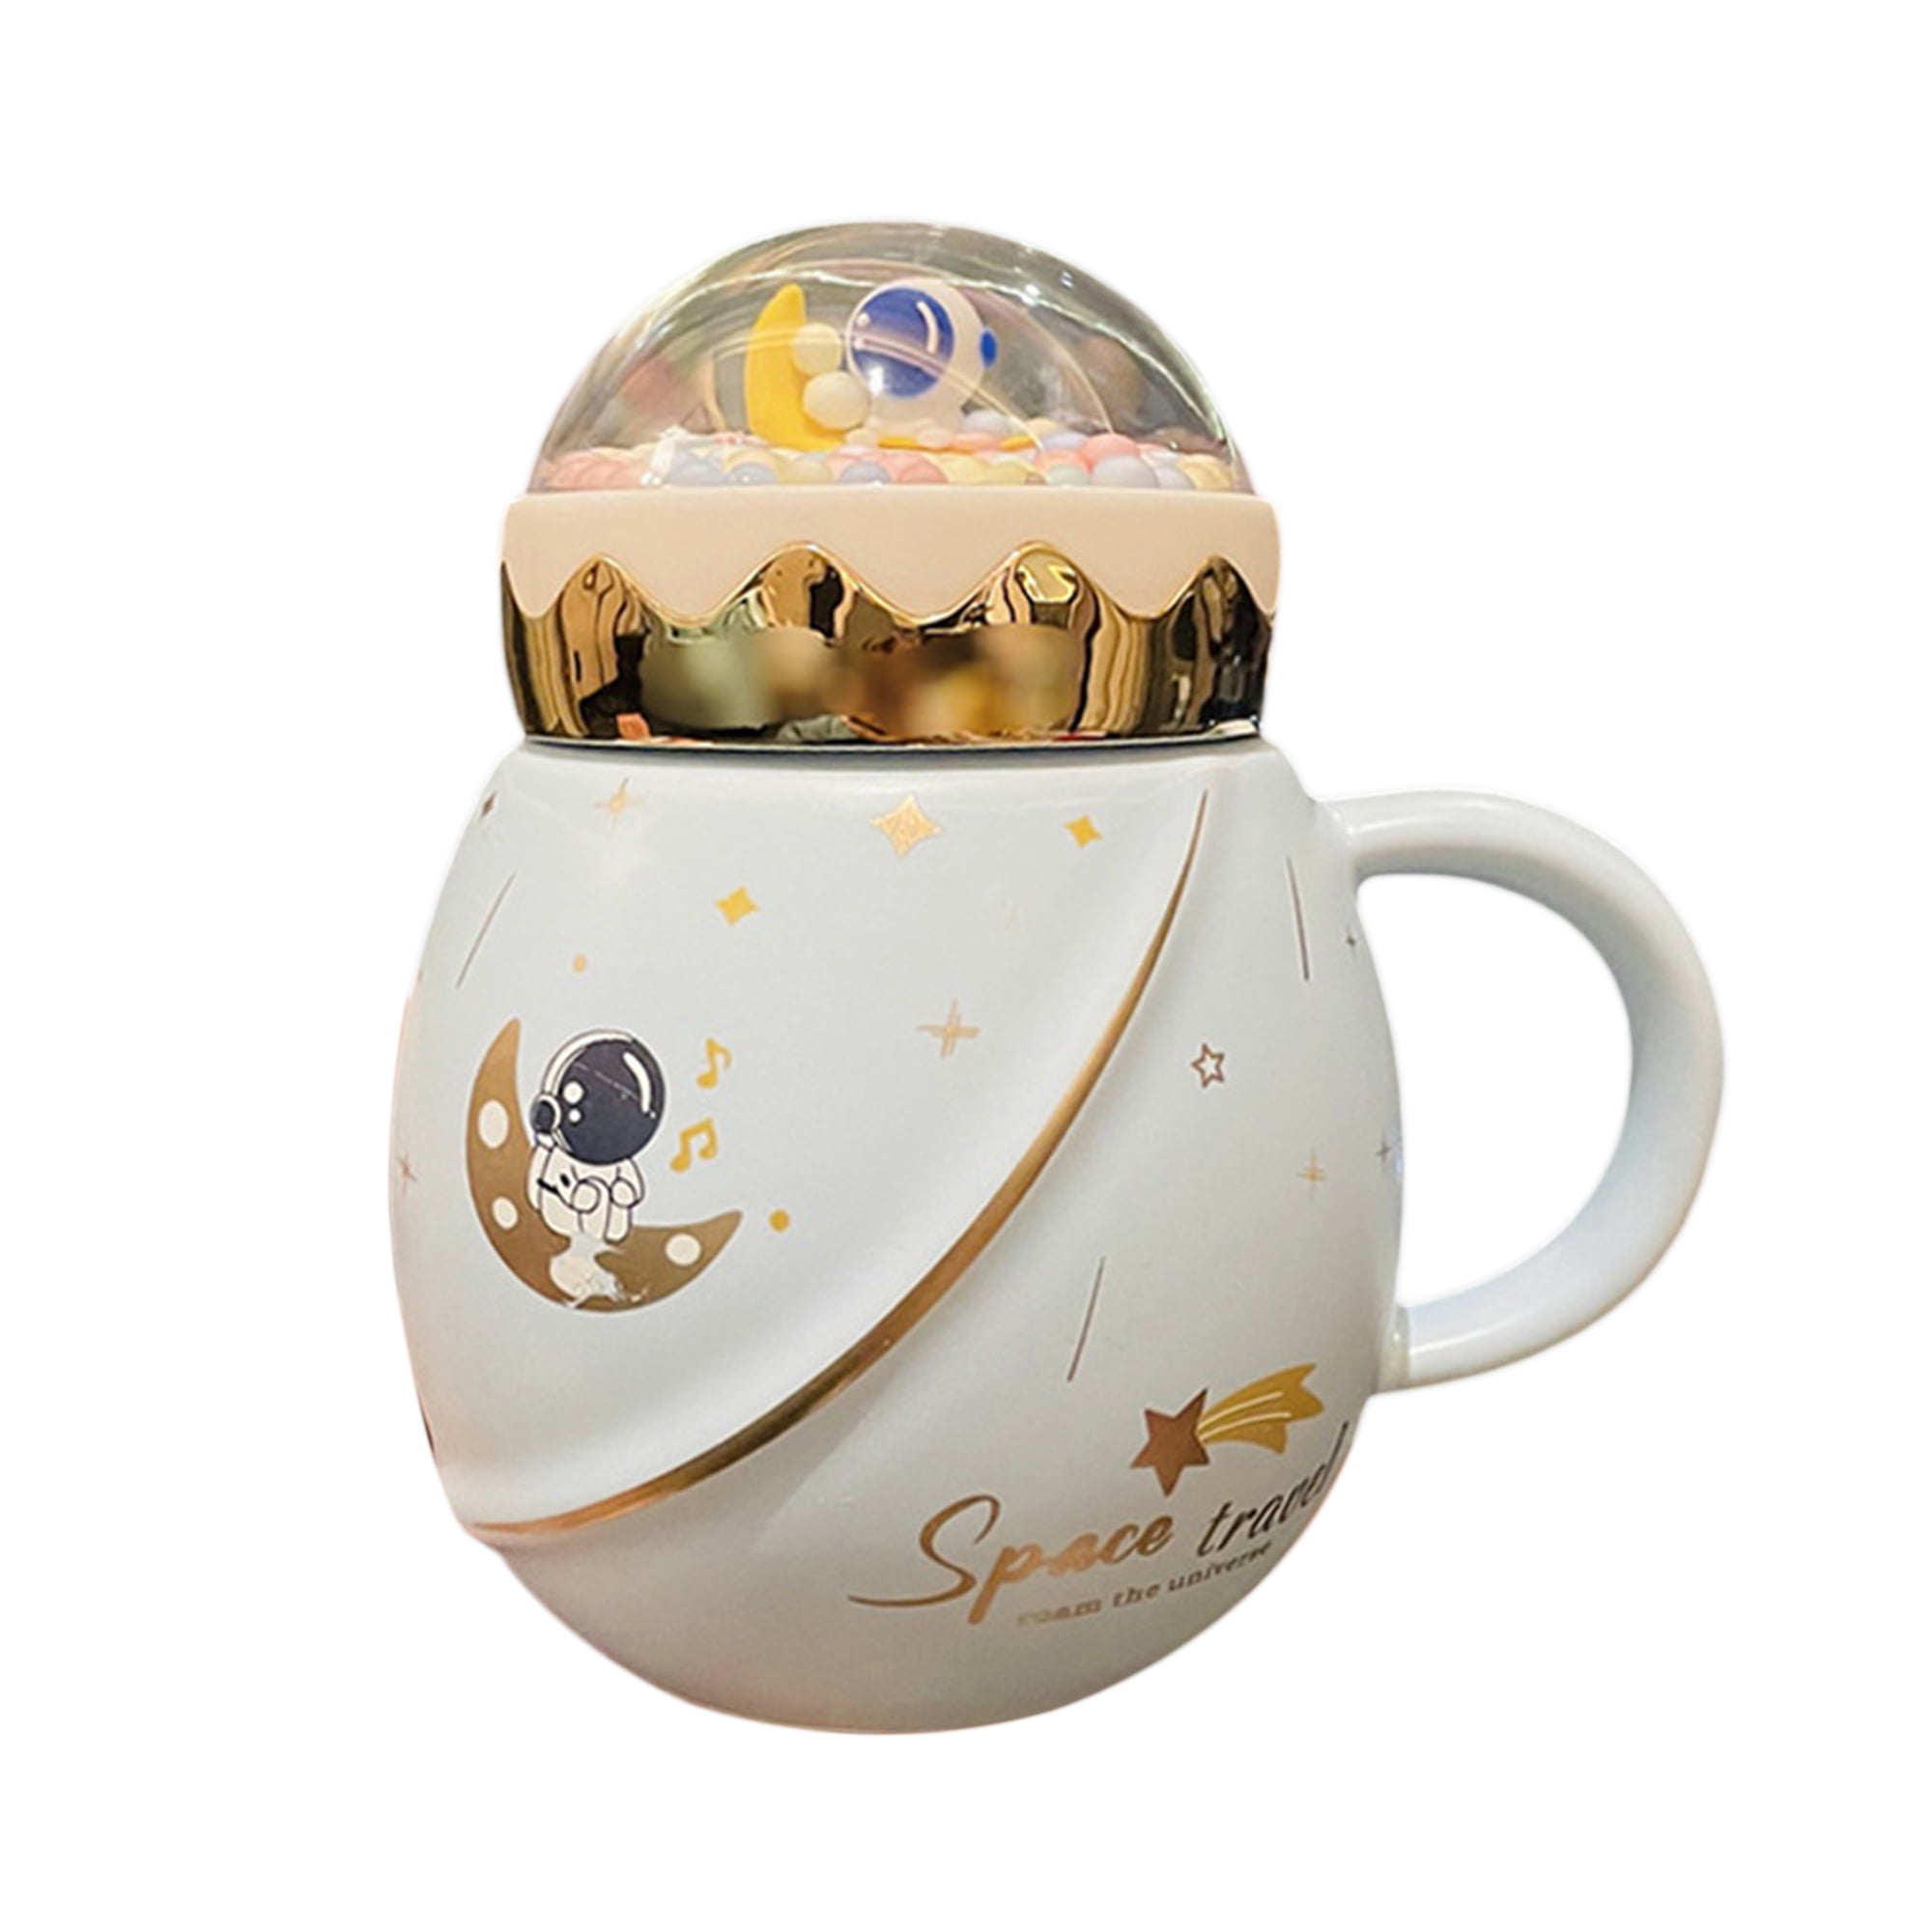 Sailor Moon Pink Mug Coffee Mug Novelty Cup Gift 